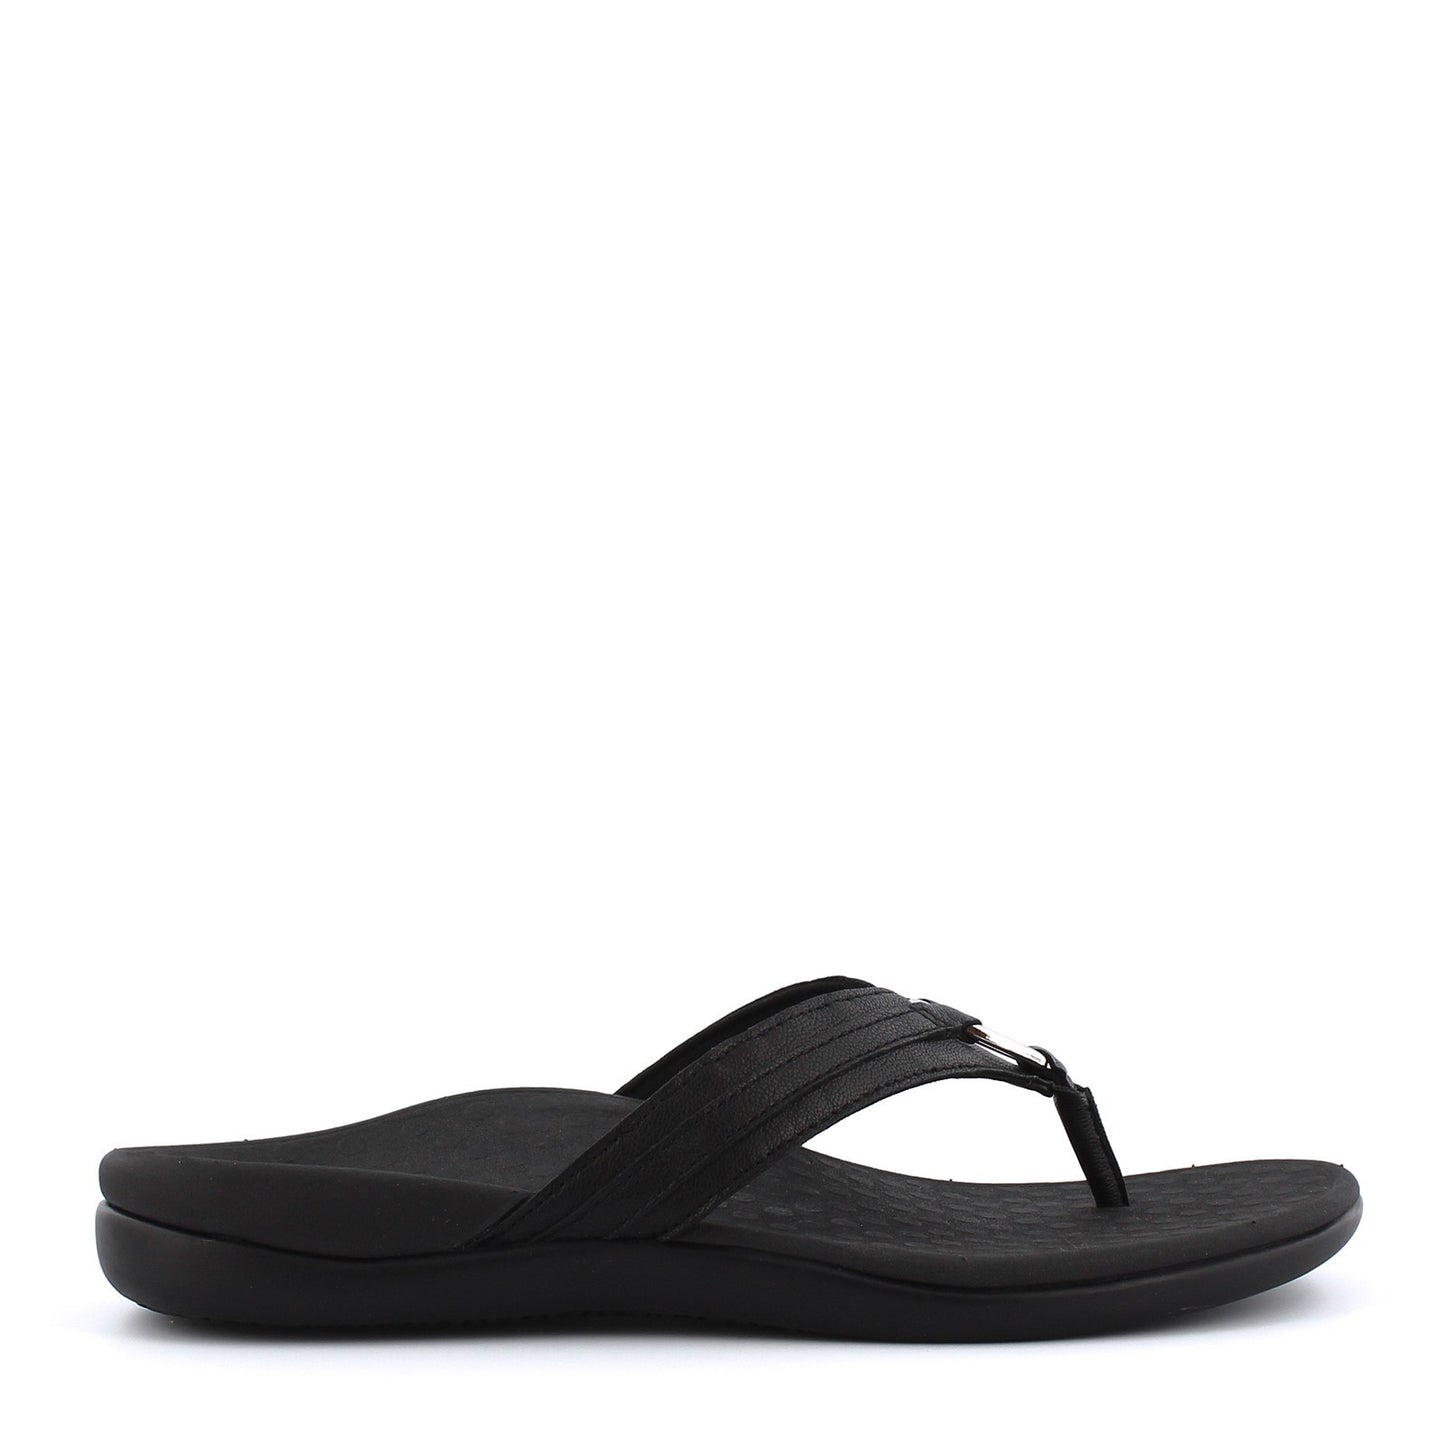 Peltz Shoes  Women's Vionic Tide Aloe Sandal BLACK LEATHER 10010887-BLK